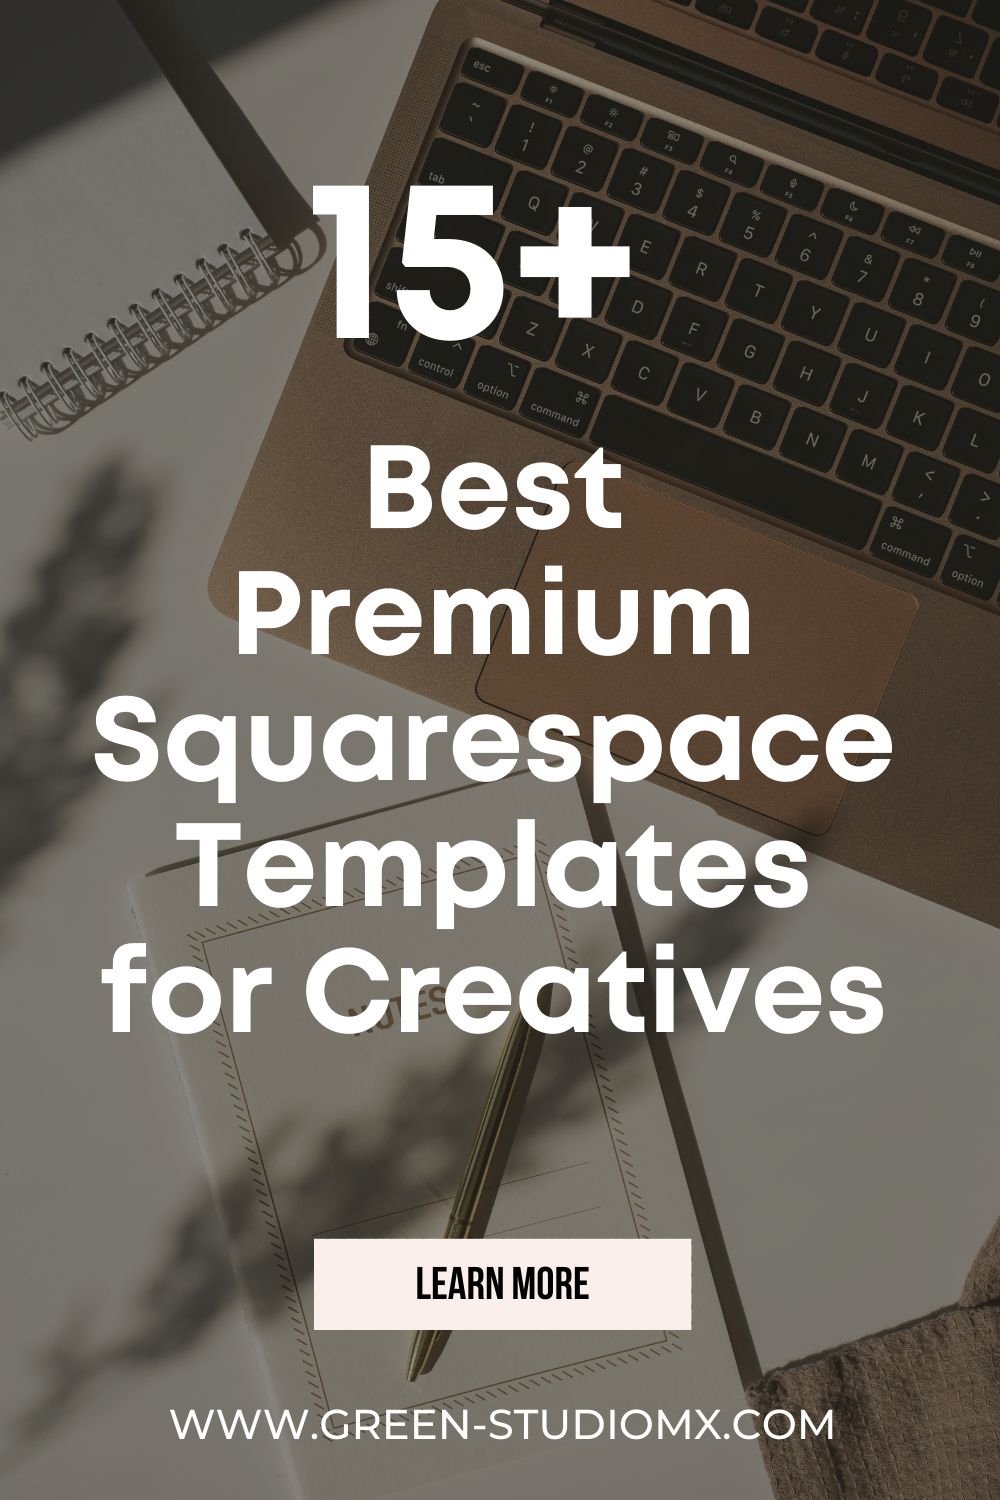 Premium Squarespace templates